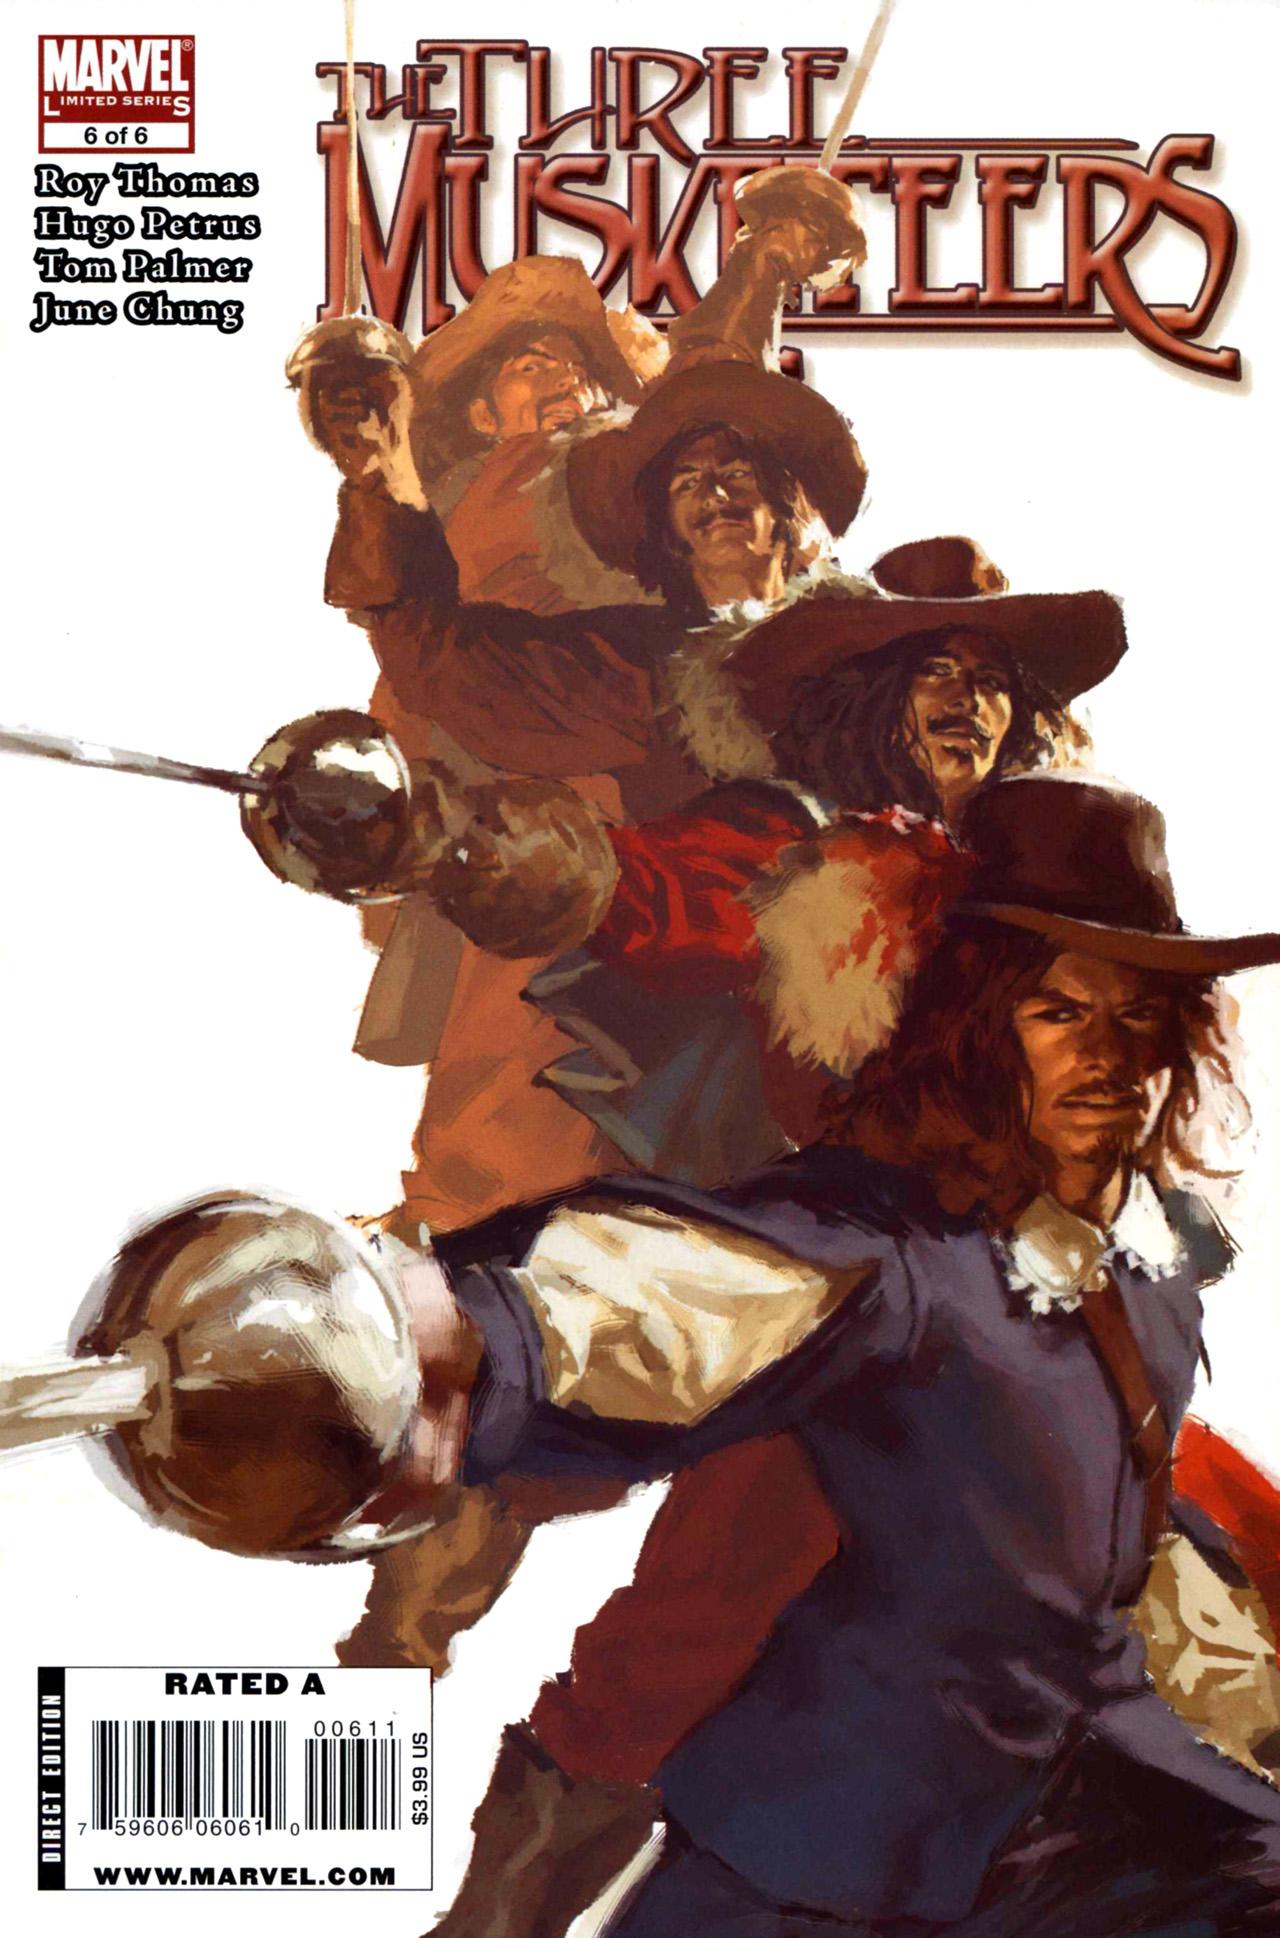 Marvel Illustrated: The Three Musketeers Vol. 1 #6